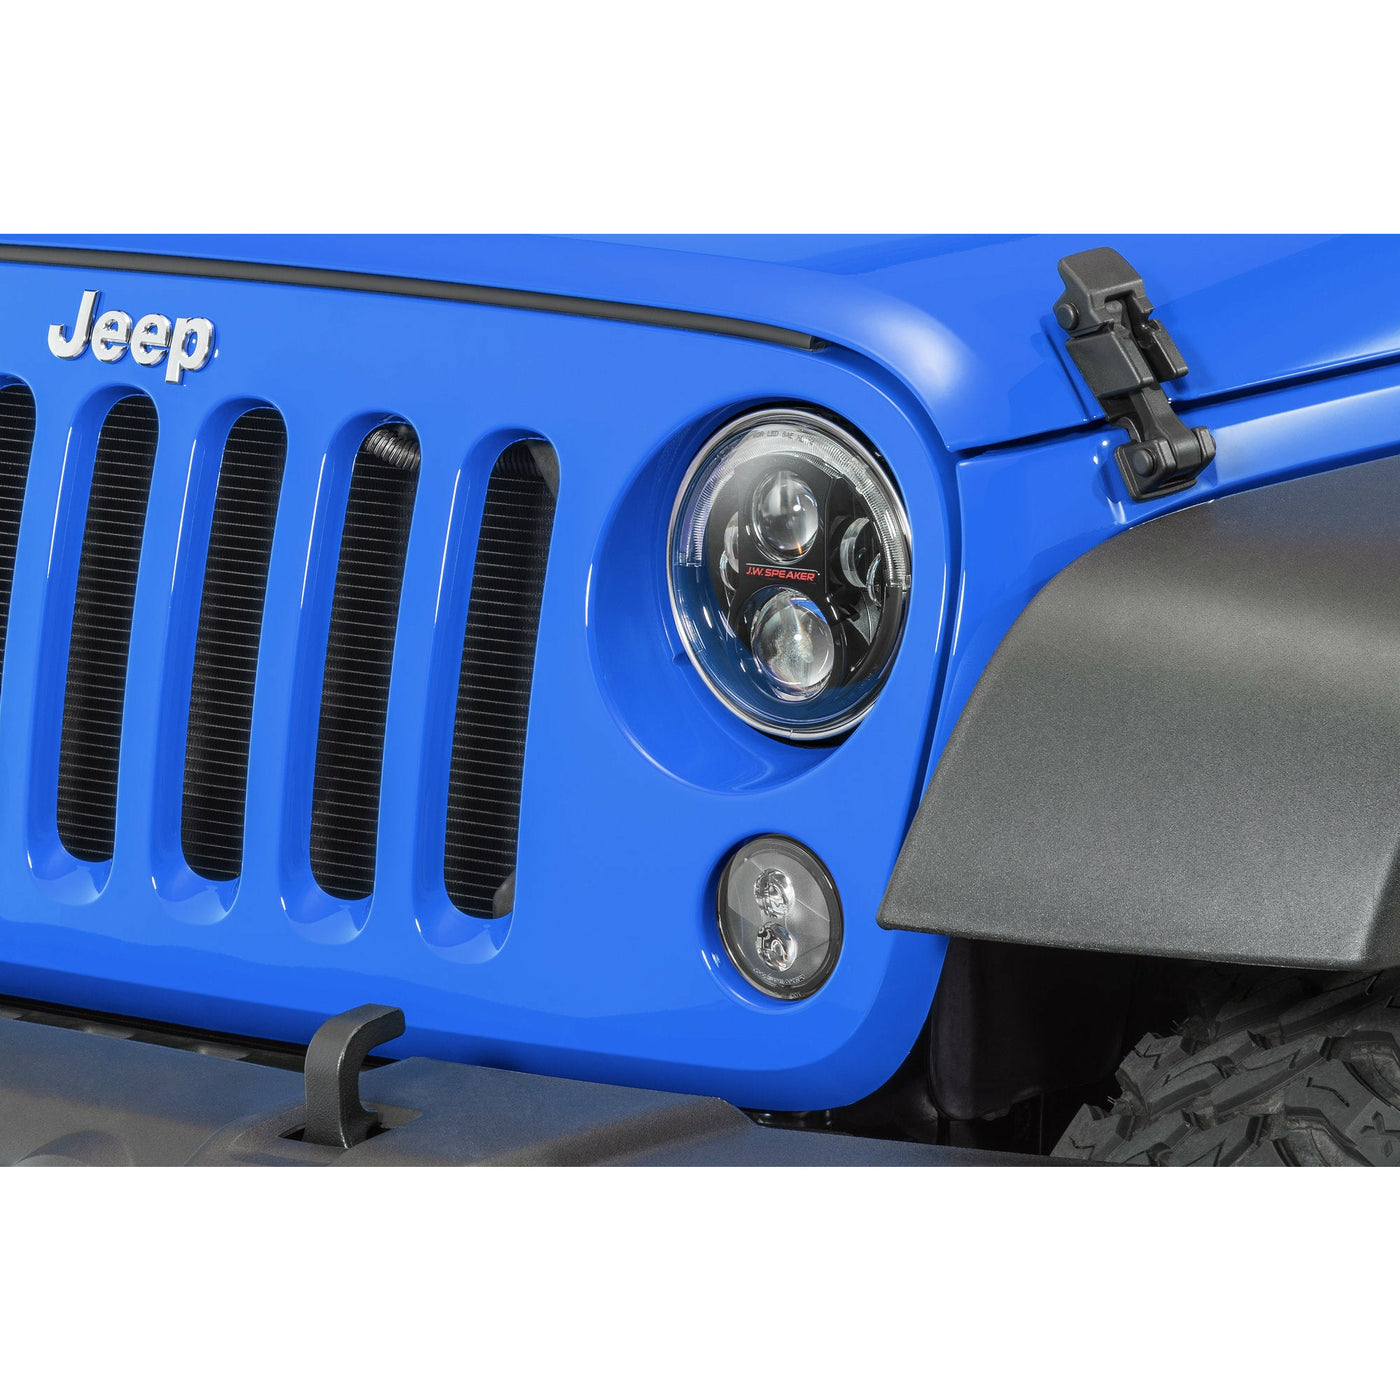 J.W. Speaker Model Evolution J2 Series 7" LED Headlight Pair for Jeep Wrangler JK